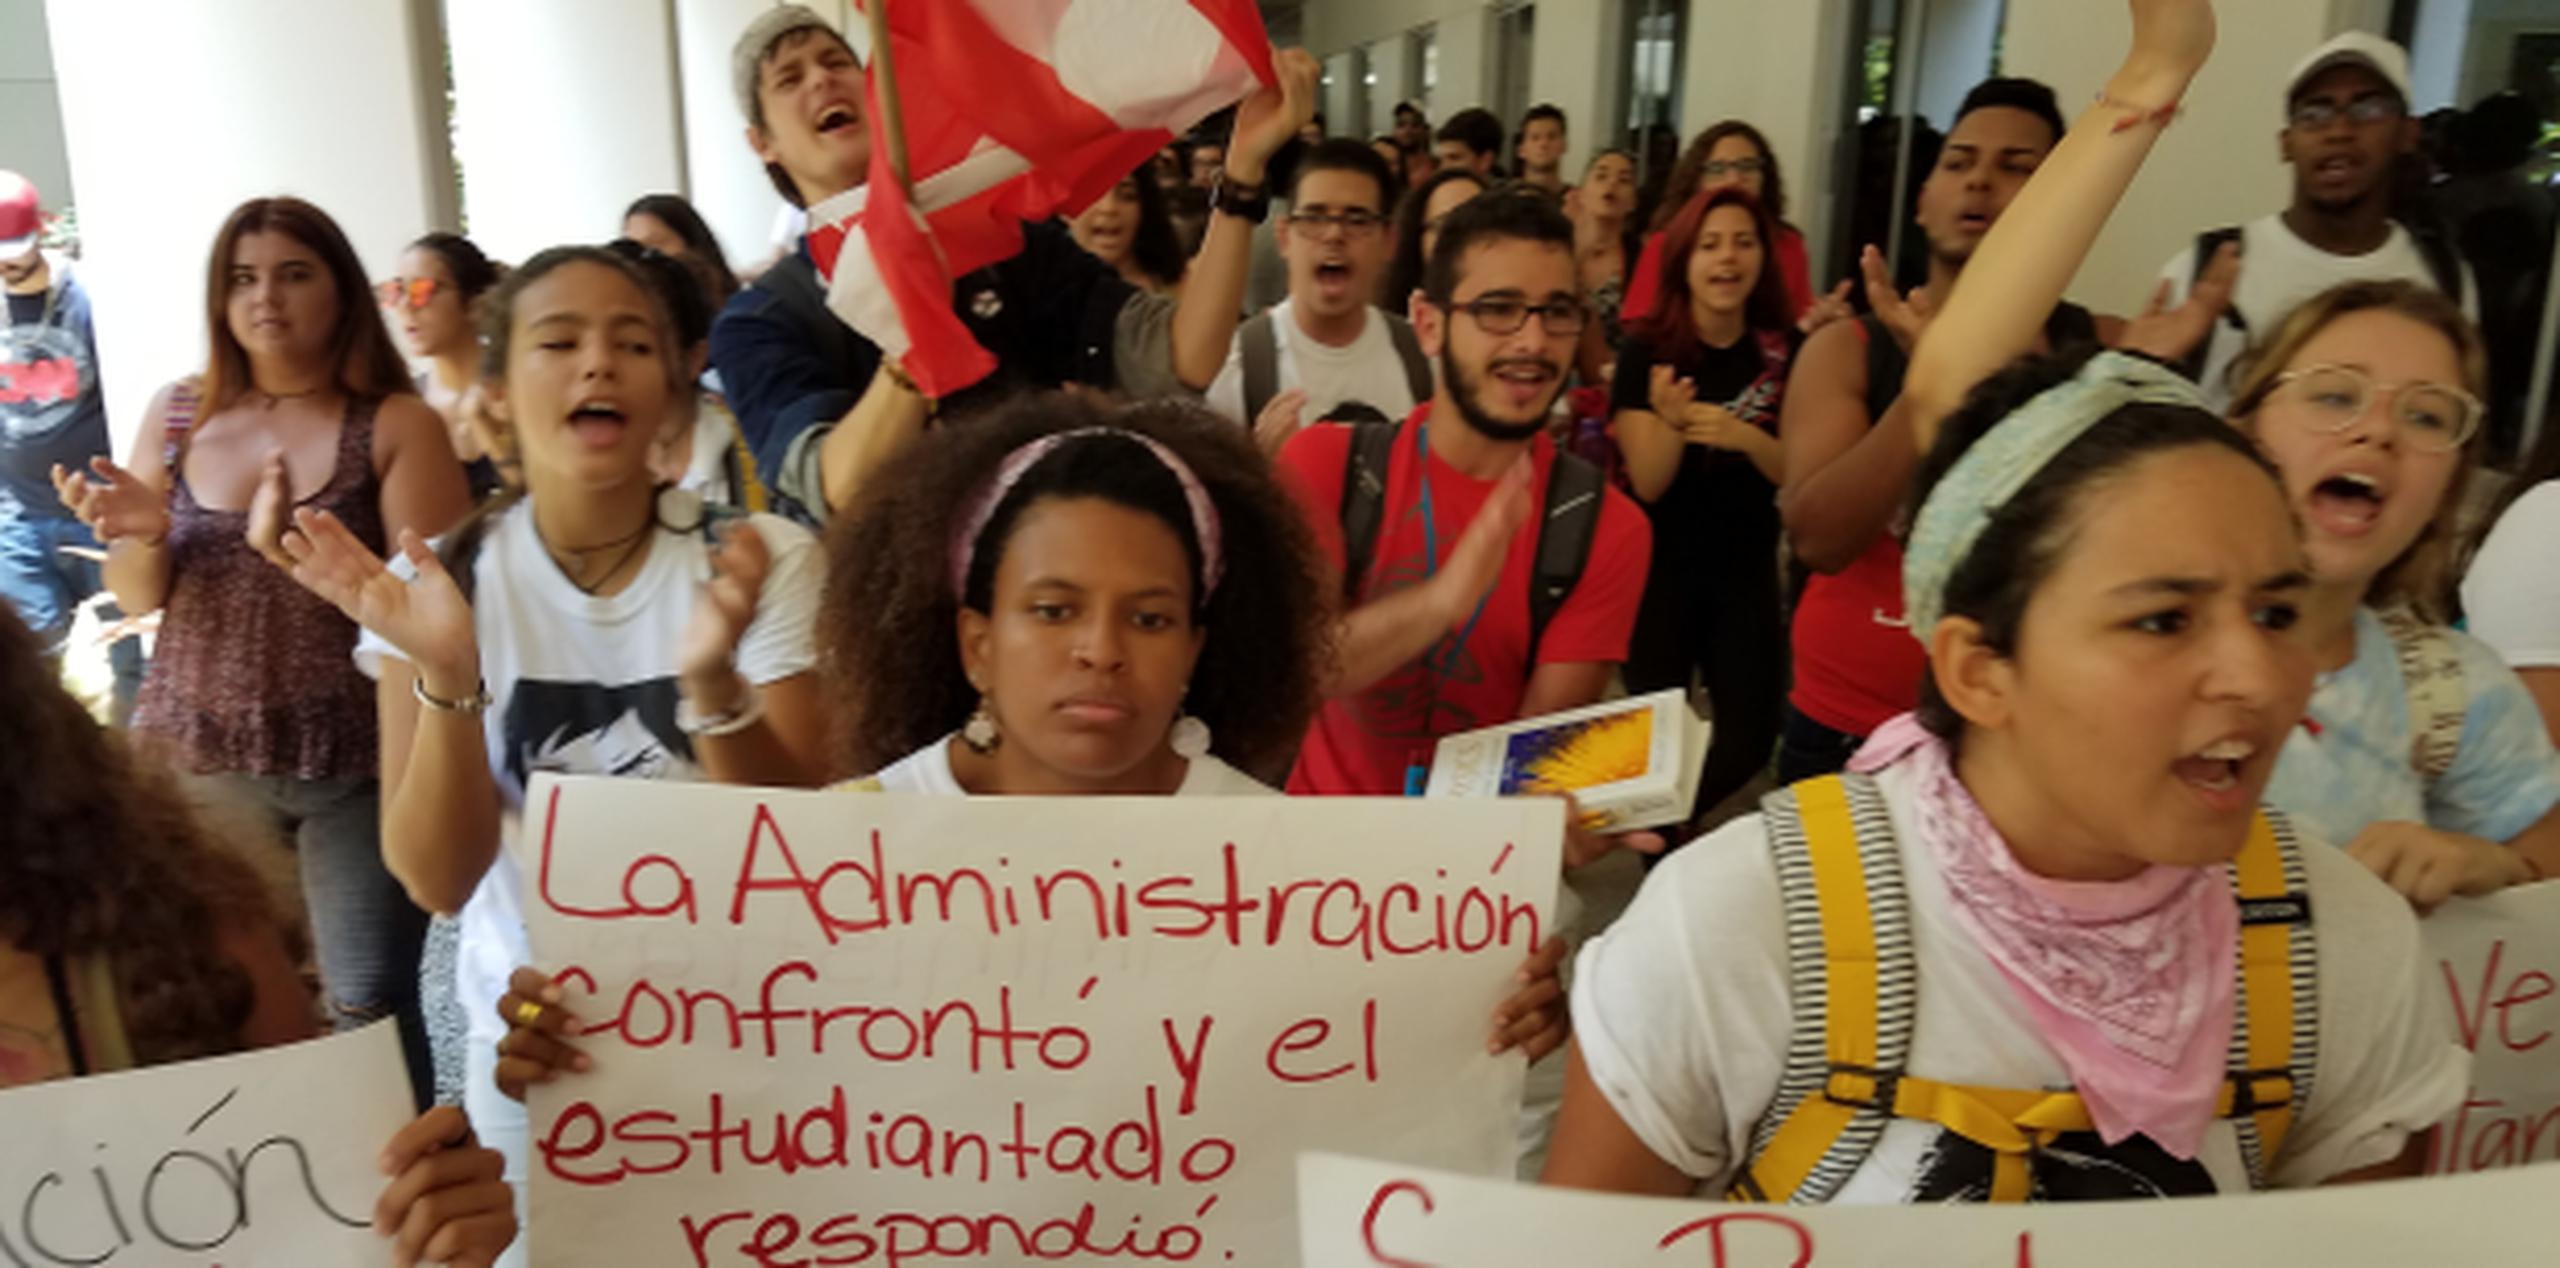 Decenas de estudiantes participaron de un "plenazo" de protesta hoy alrededor del campus de Río Piedras. (wandaliz.vega@gfrmedia.com)